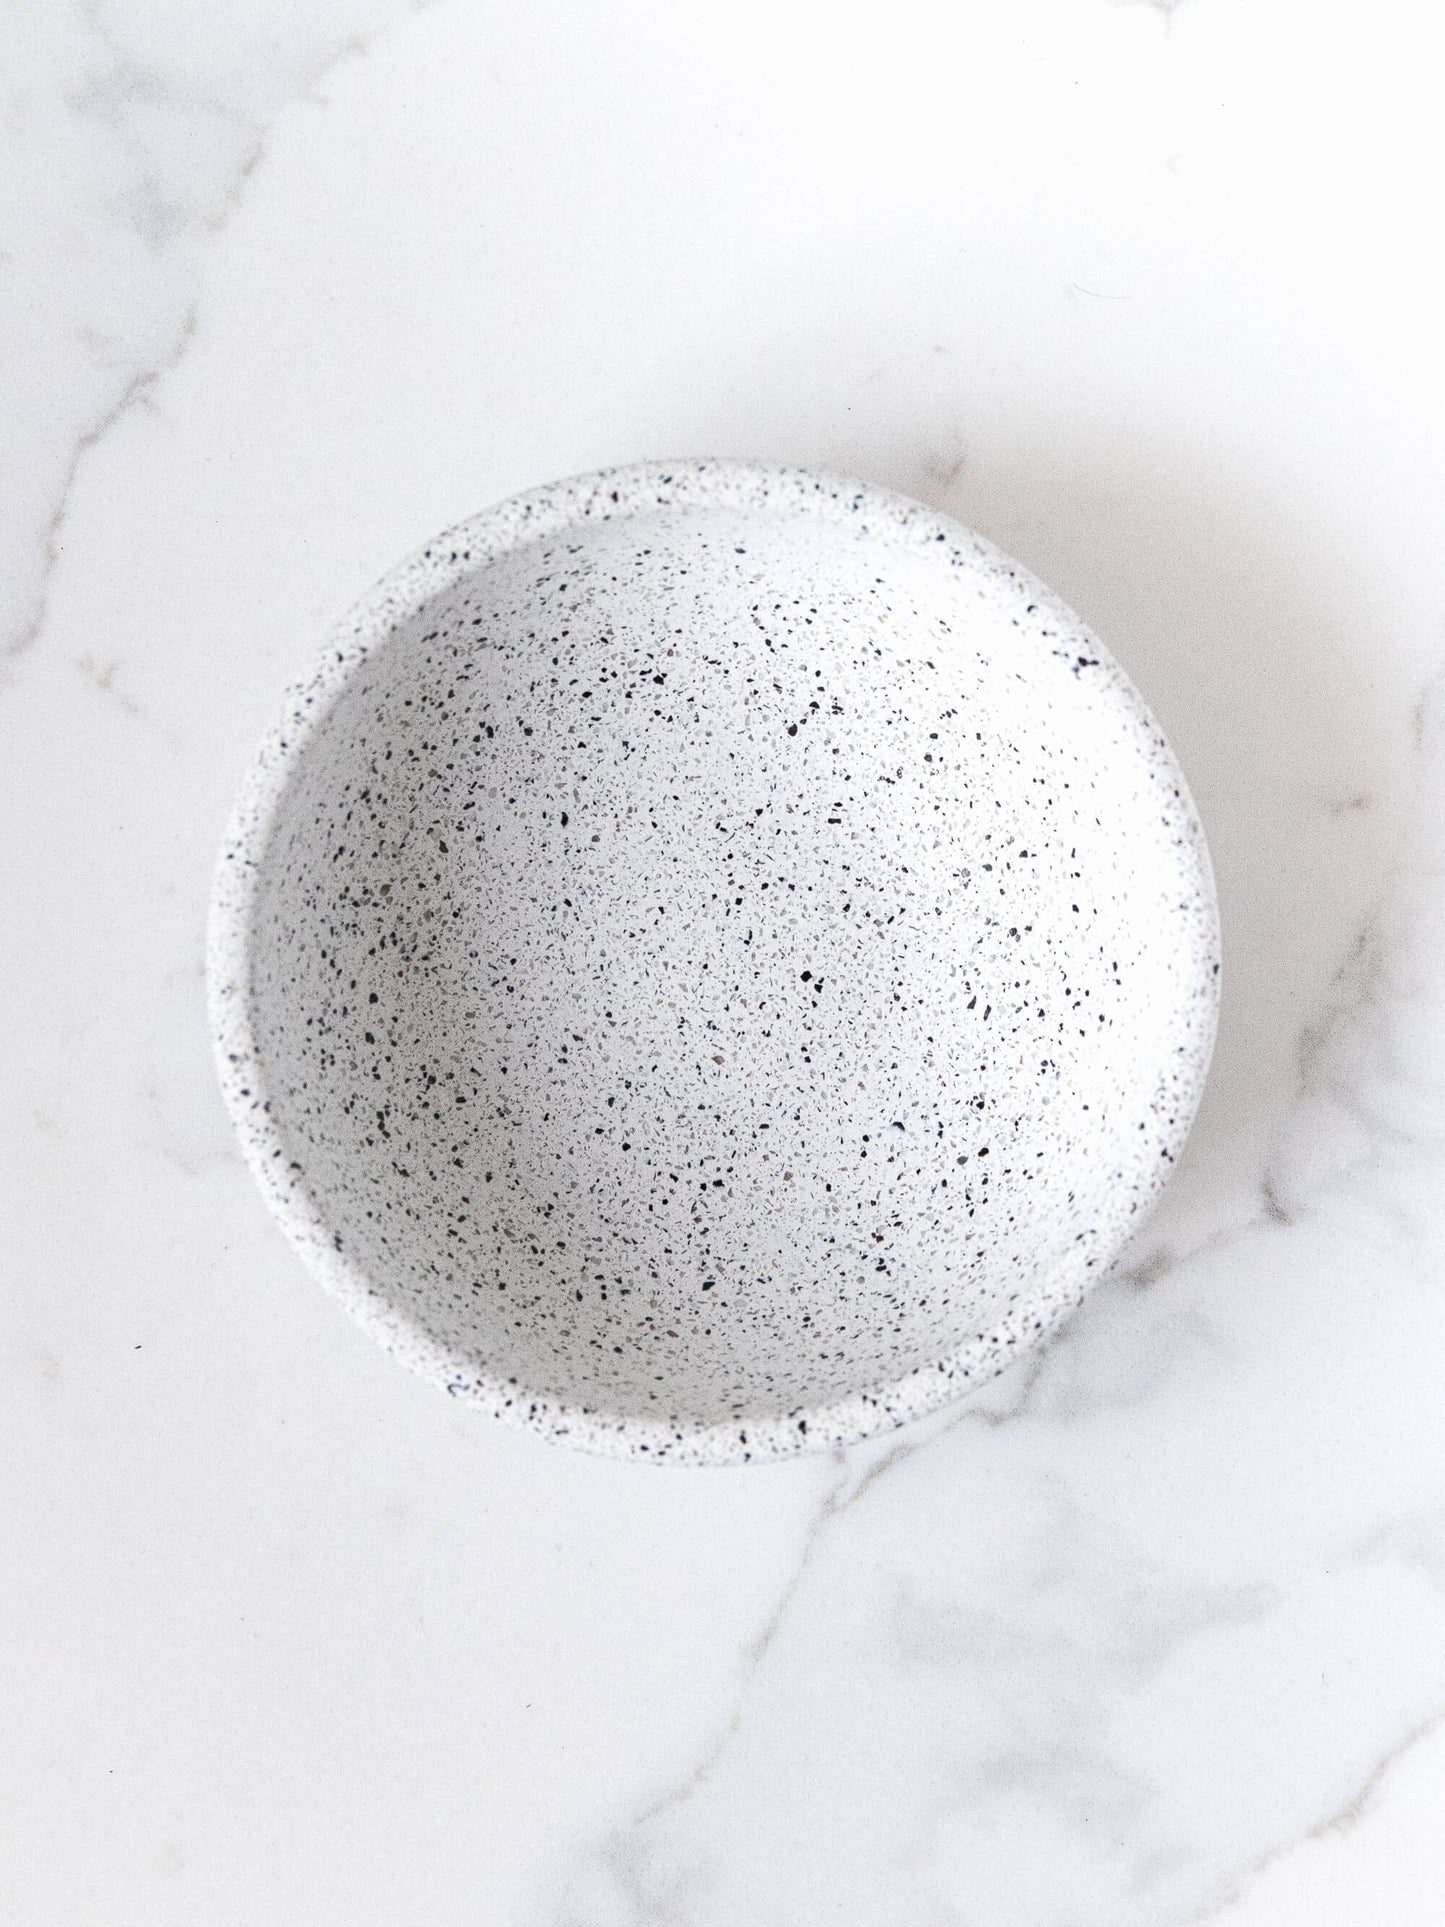 Small Bowl in Speckled White Granite Terrazzo